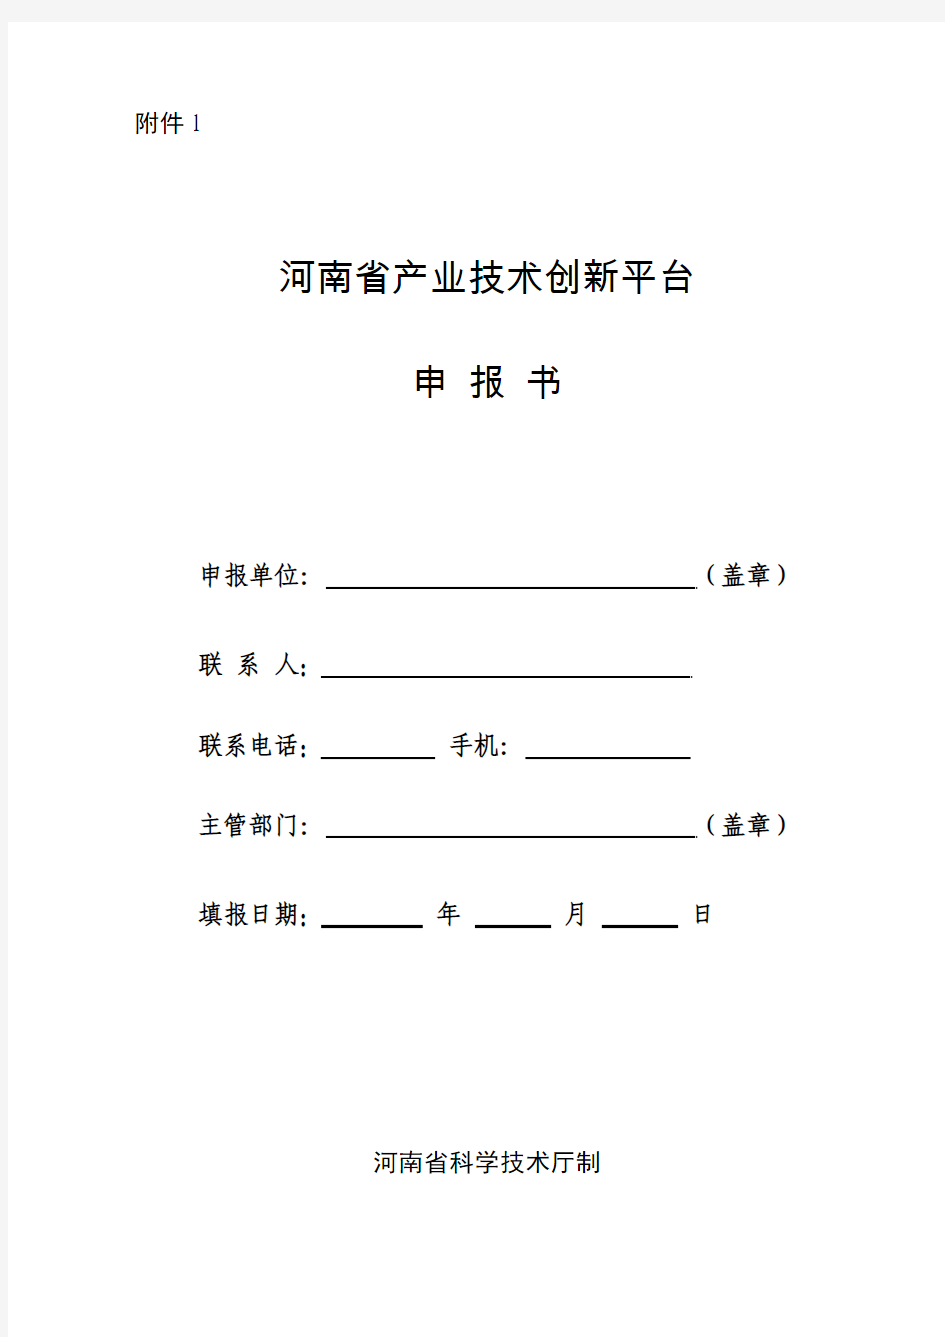 河南省产业技术创新平台申报书